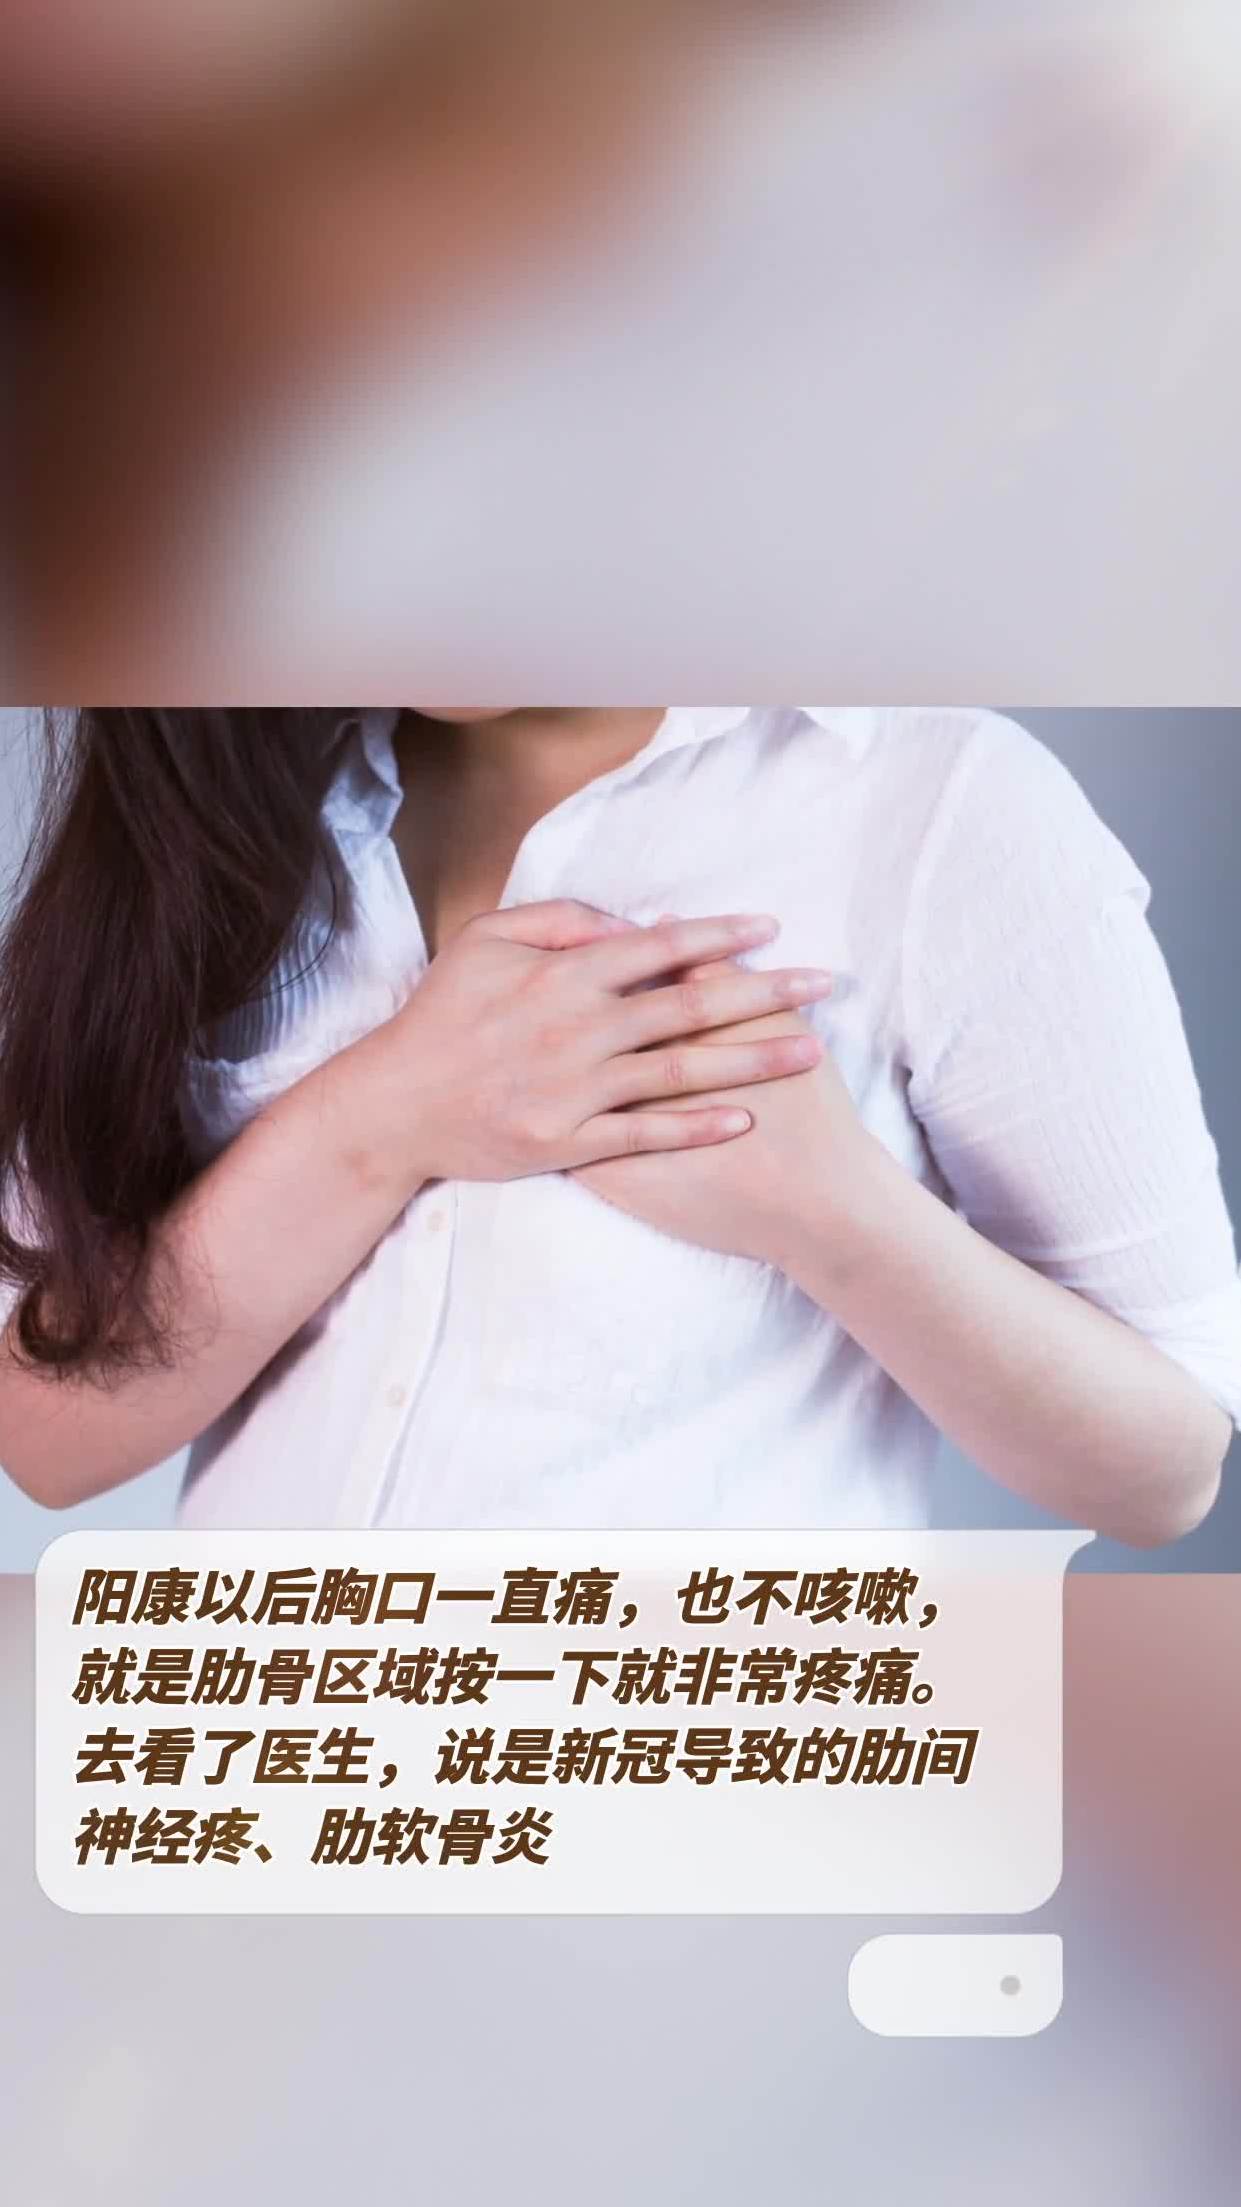 捂住心脏的心绞通患者图片平面广告素材免费下载(图片编号:4814105)-六图网